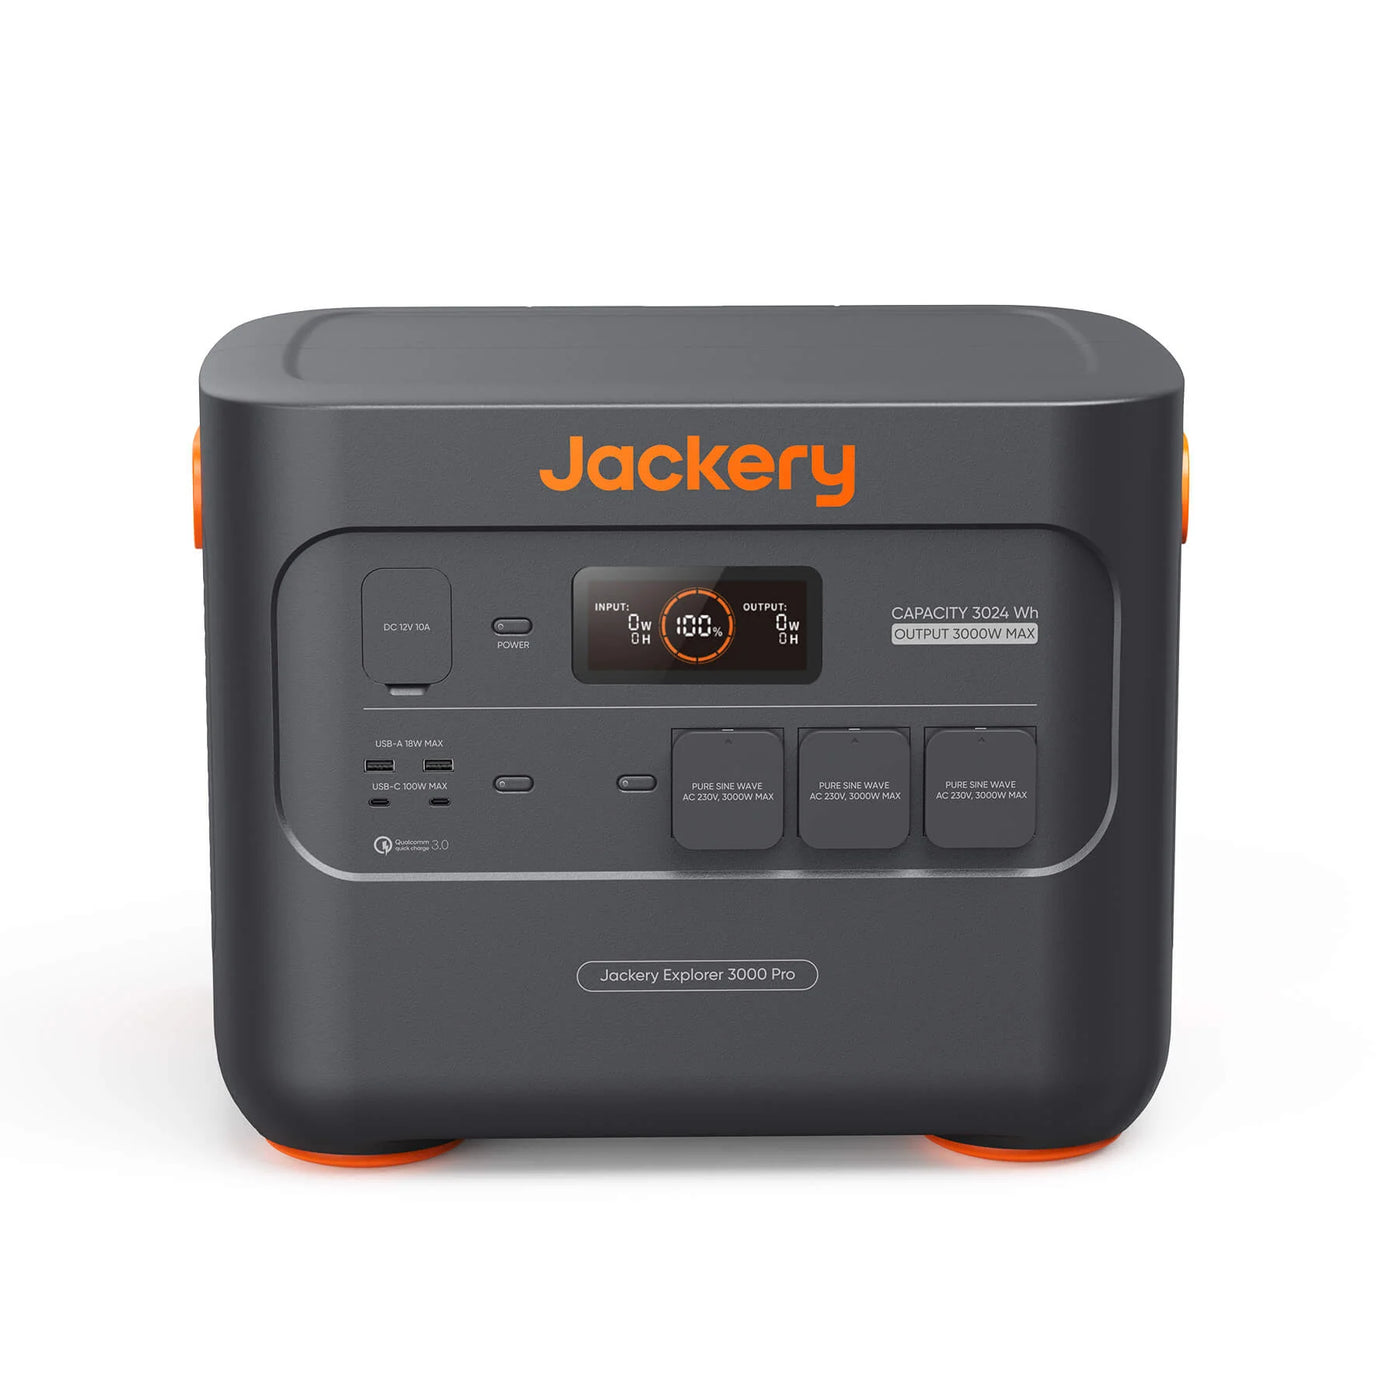 jackery-explorer-3000-pro 2